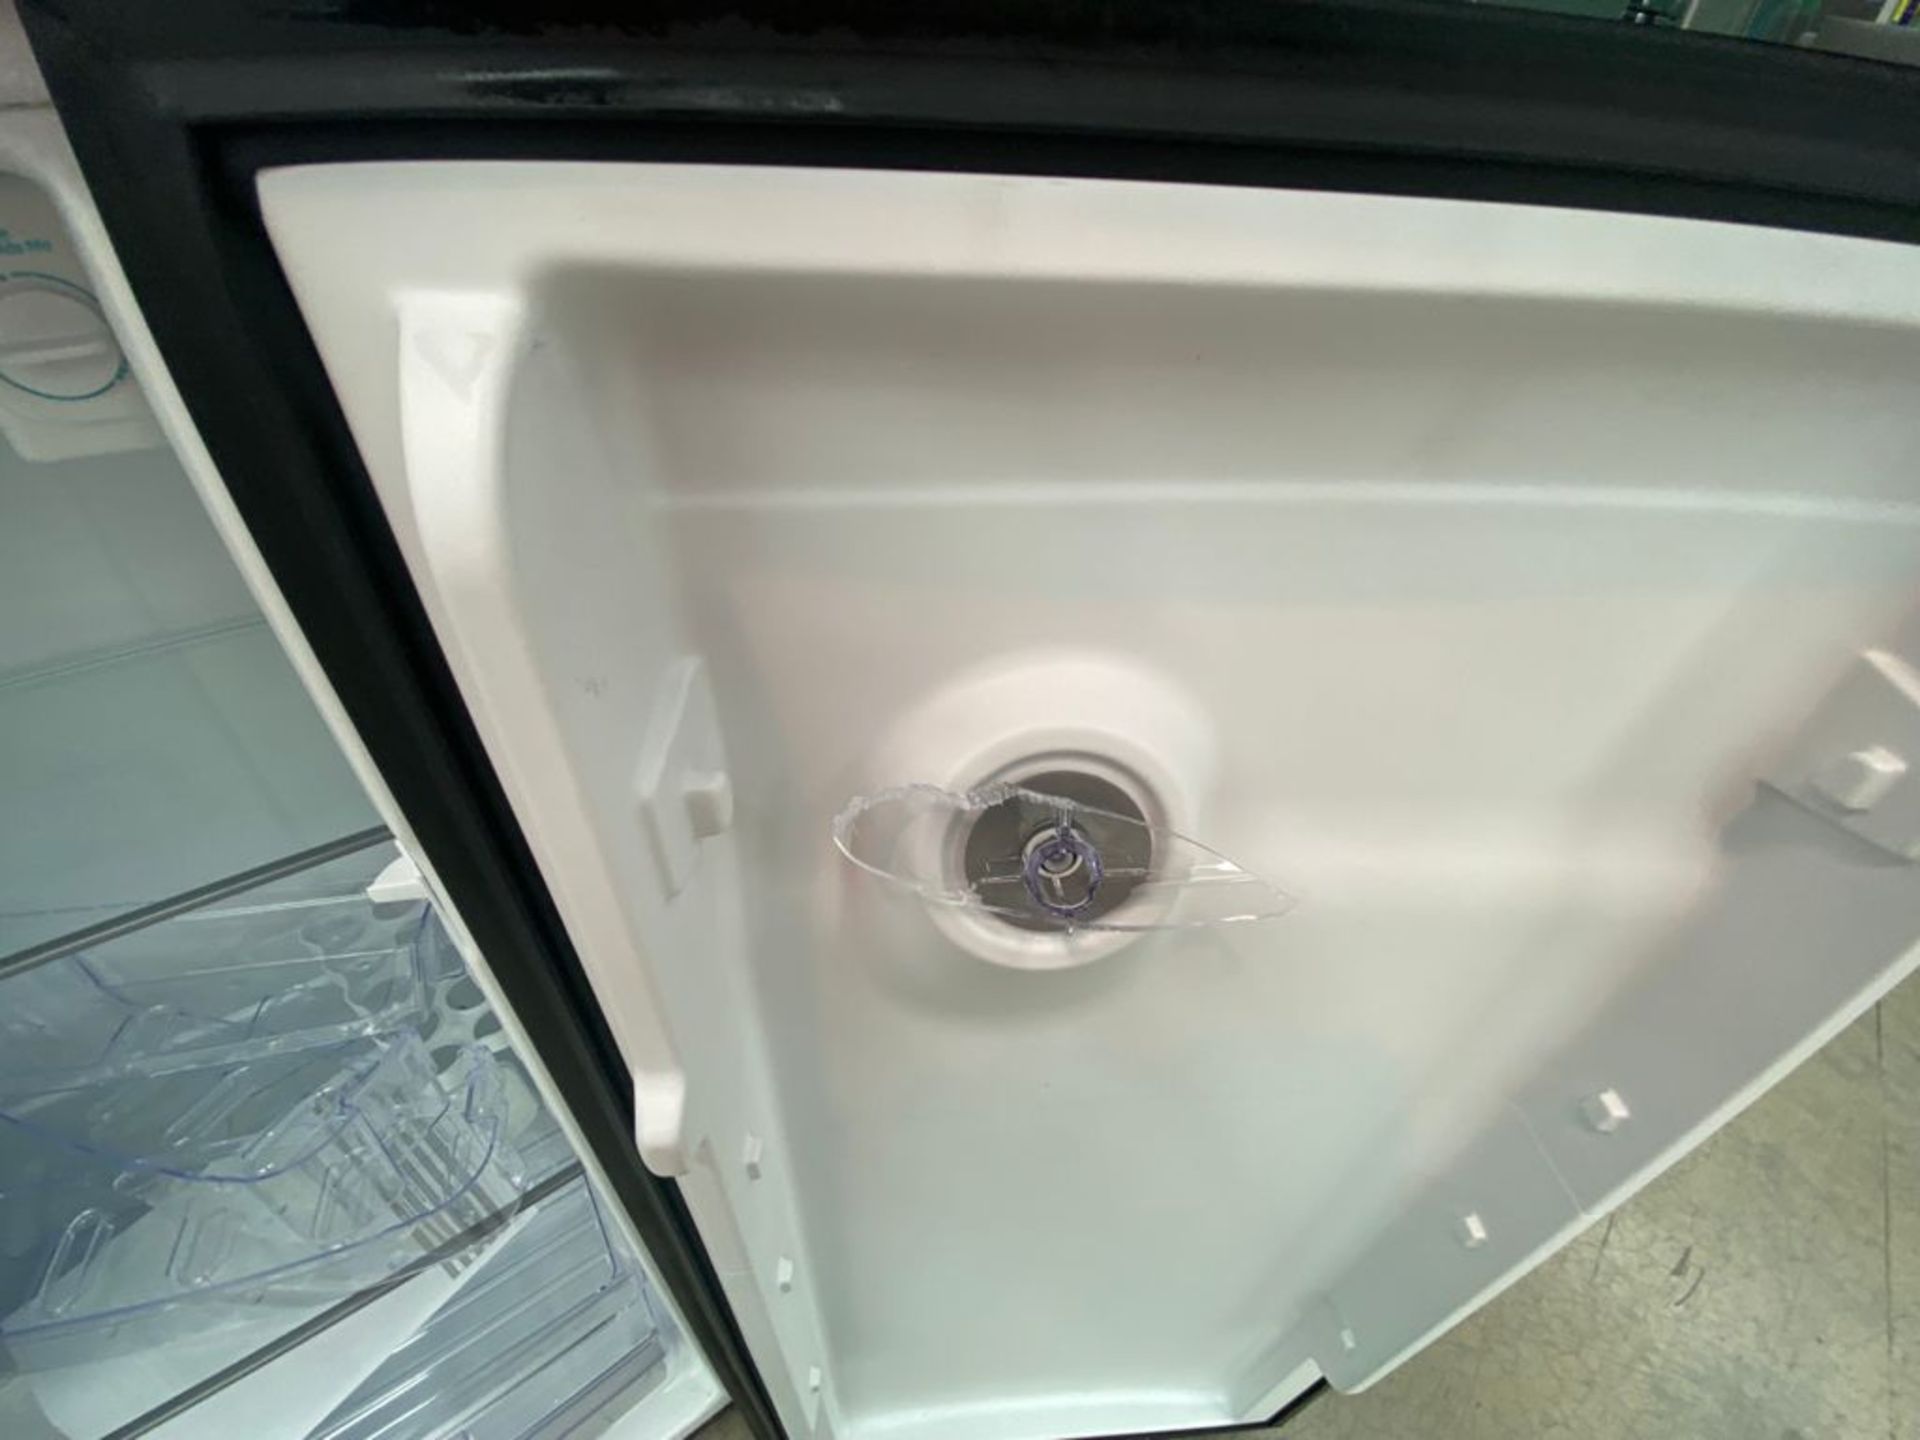 1 Refrigerador marca Whirlpool color gris con despachador de agua - Image 17 of 19